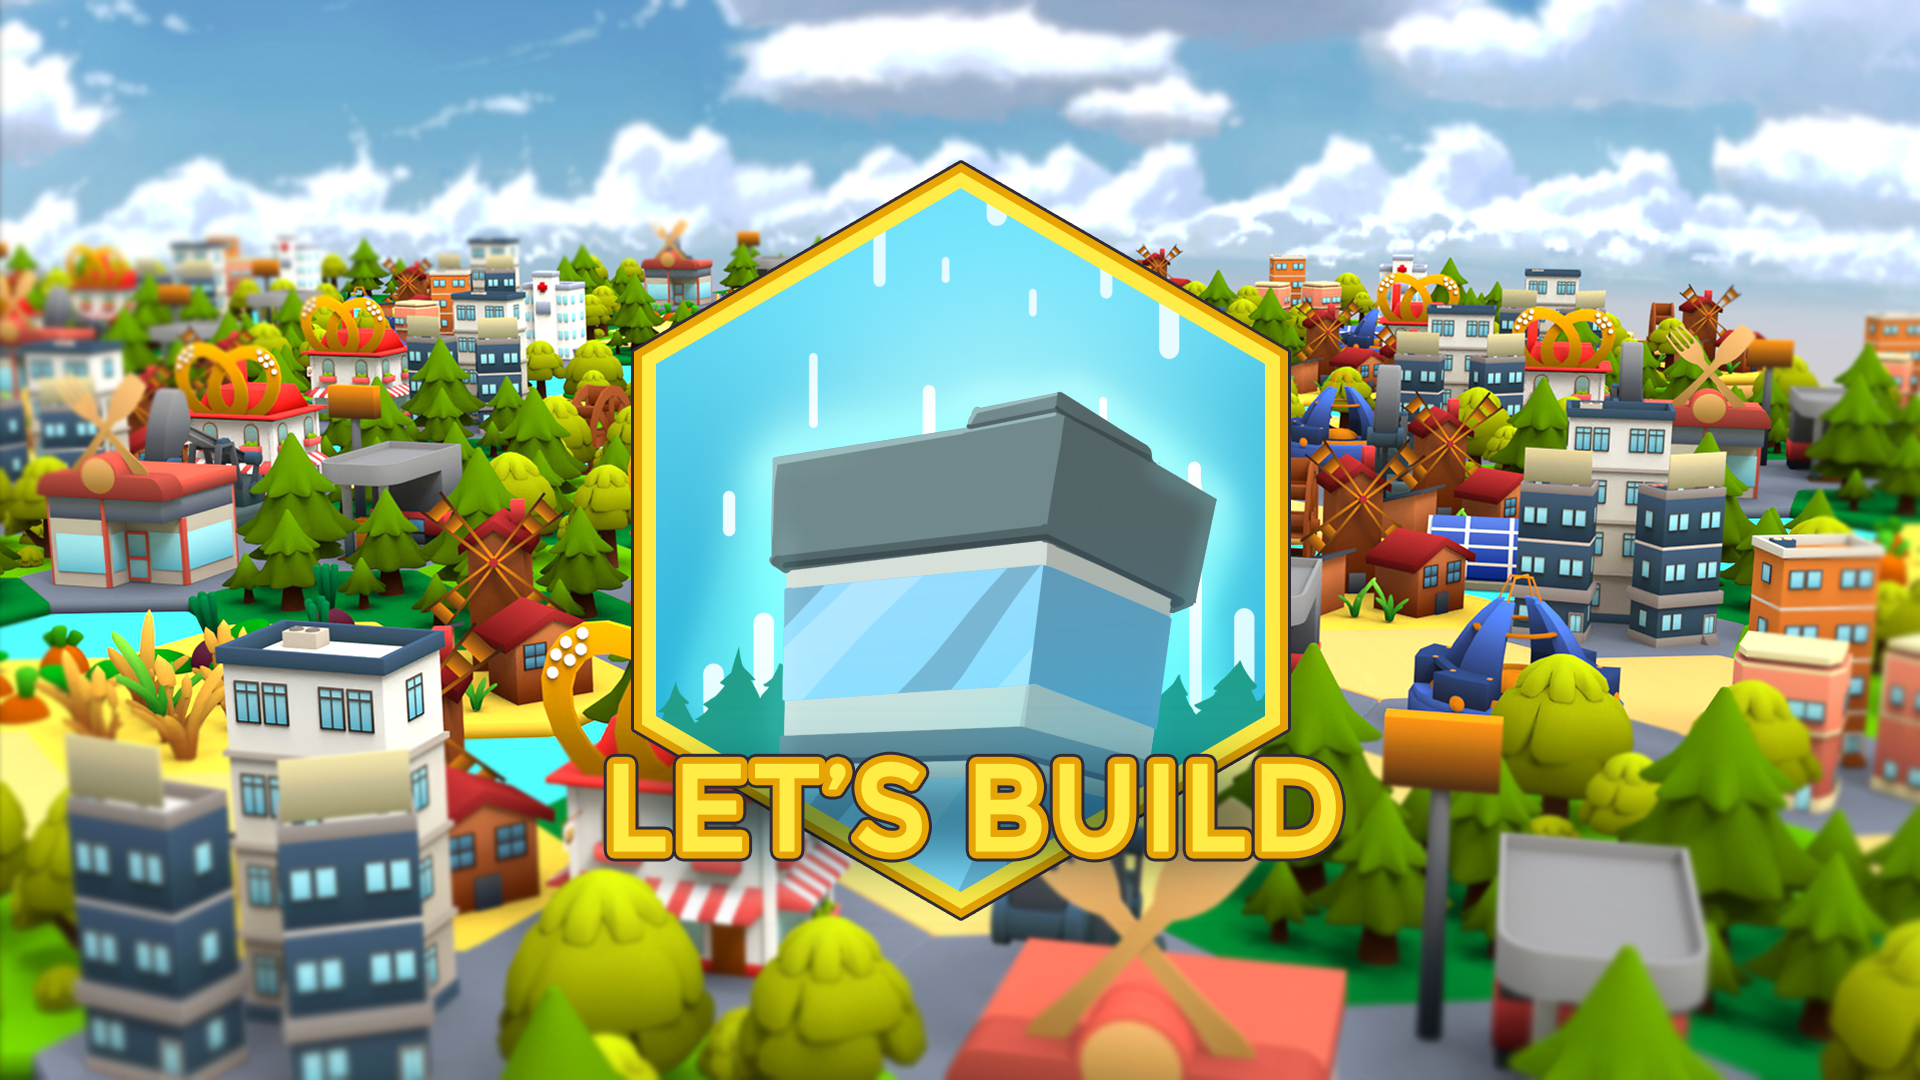 Let's Build